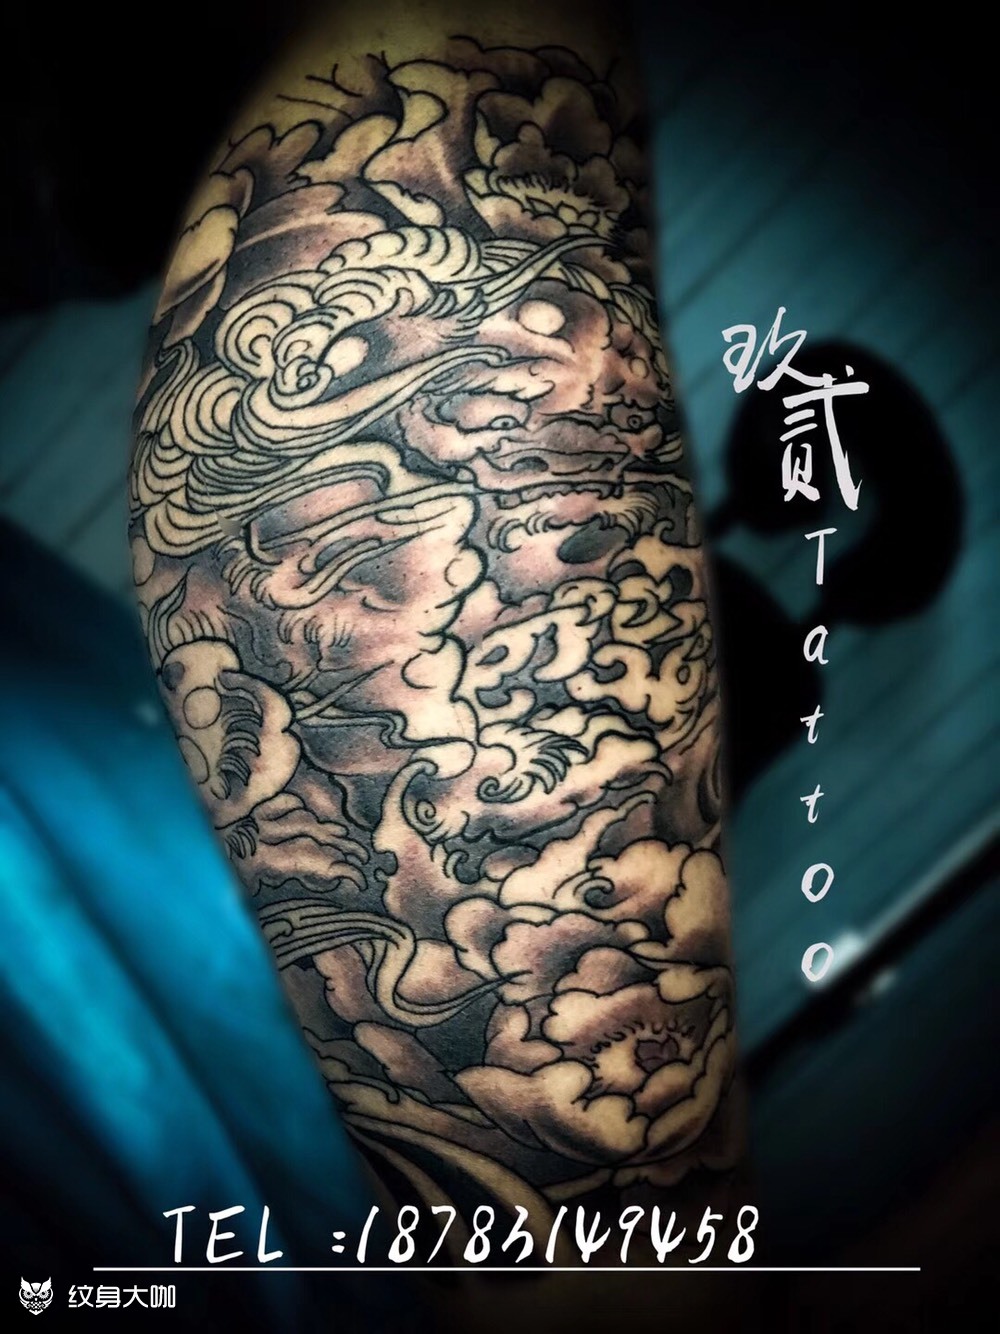 唐狮包小腿_纹身图案手稿图片_筠连玖贰tattoo的纹身